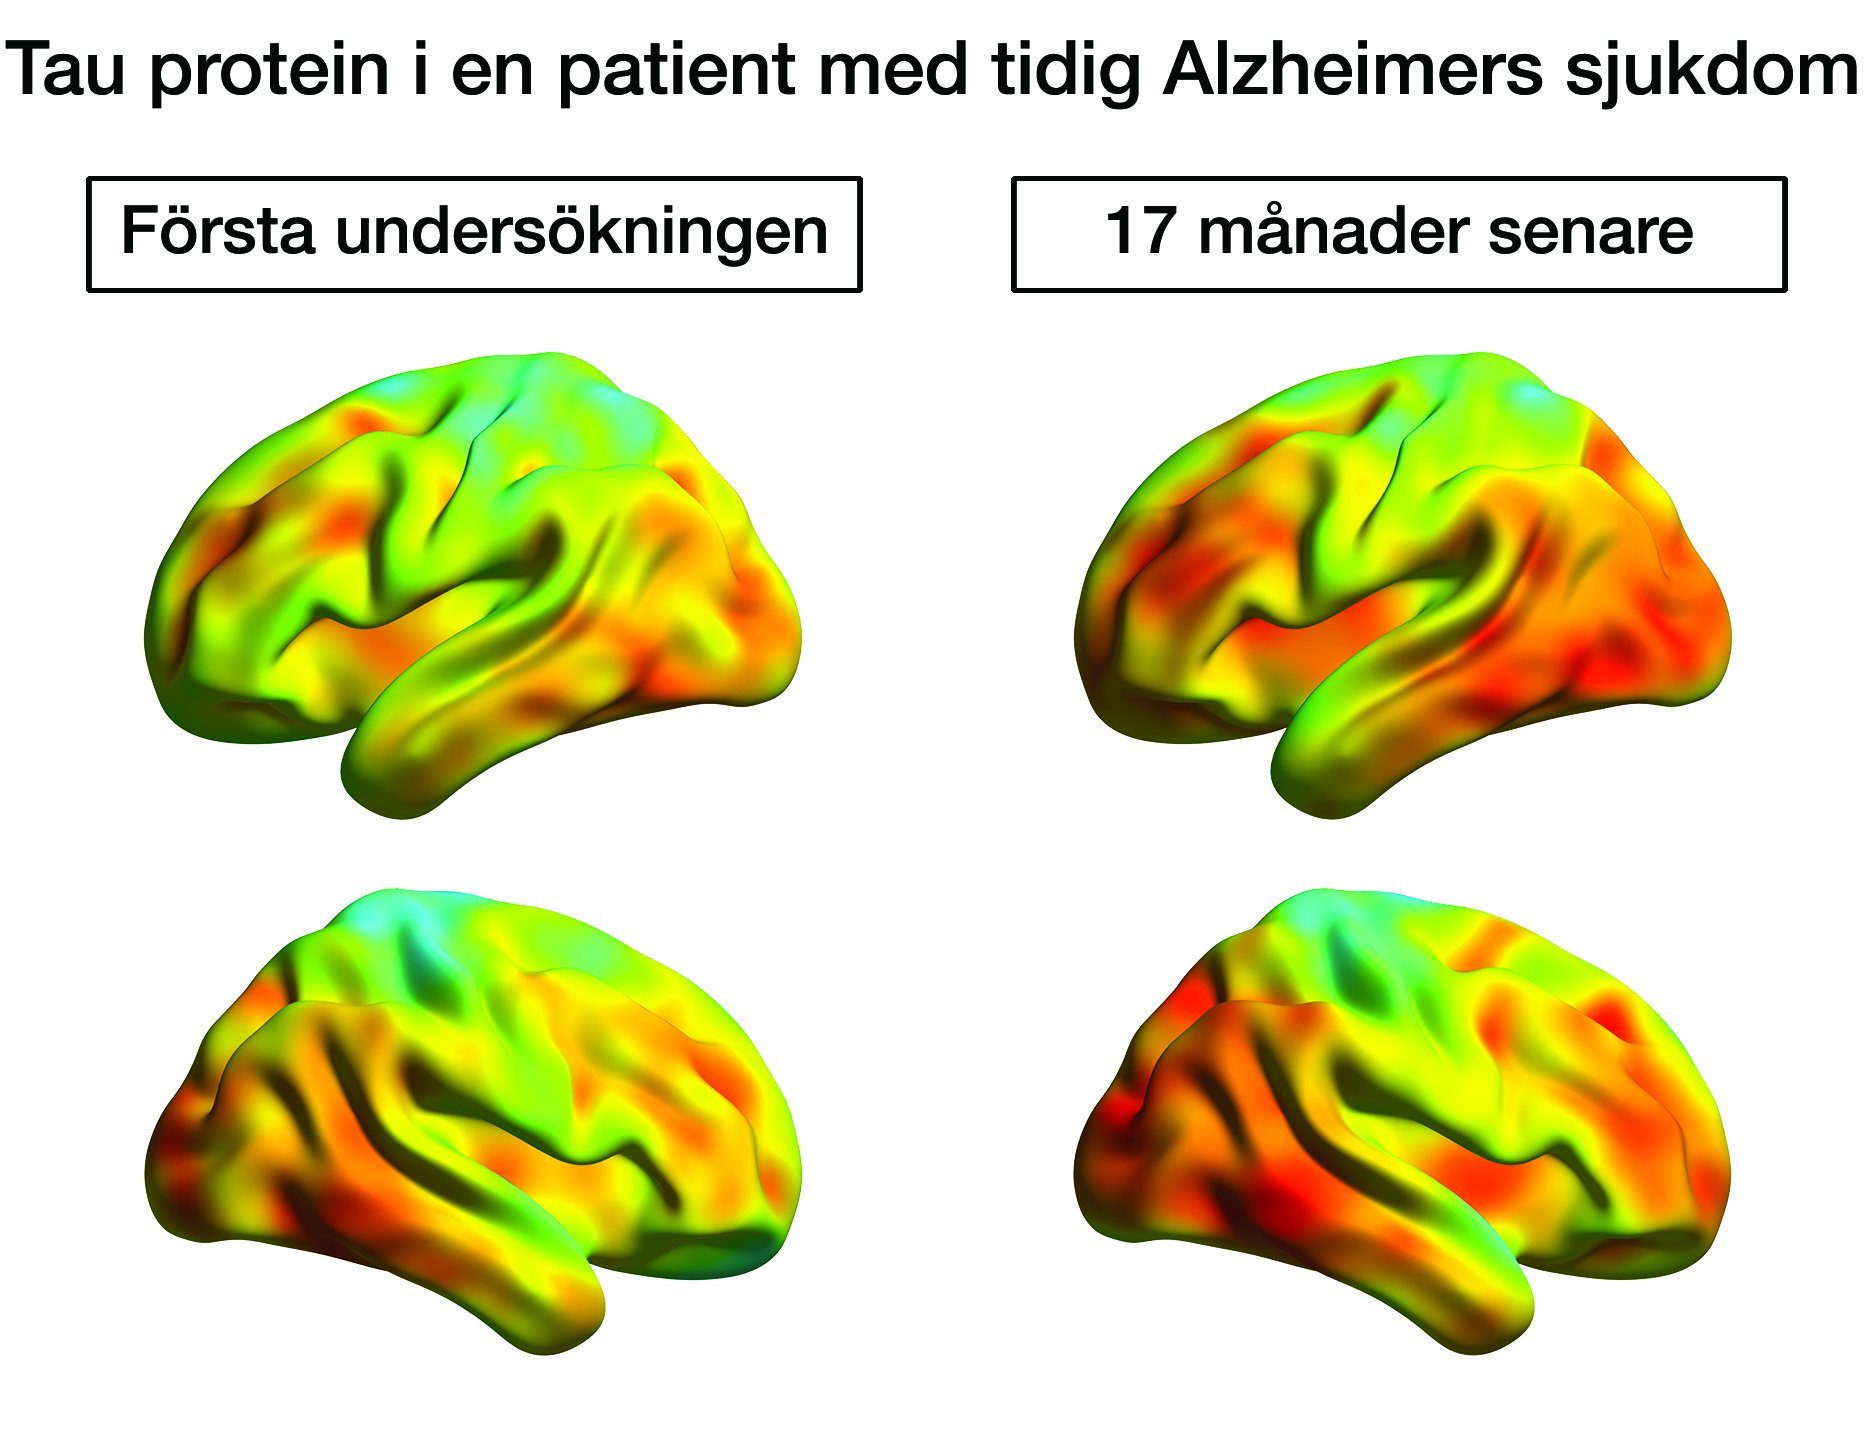 PET-undersökning visar hur tauansamlingar sprids i hjärnan under förloppet av Alzheimers sjukdom. Foto:Nordberg/Chiotis etal.